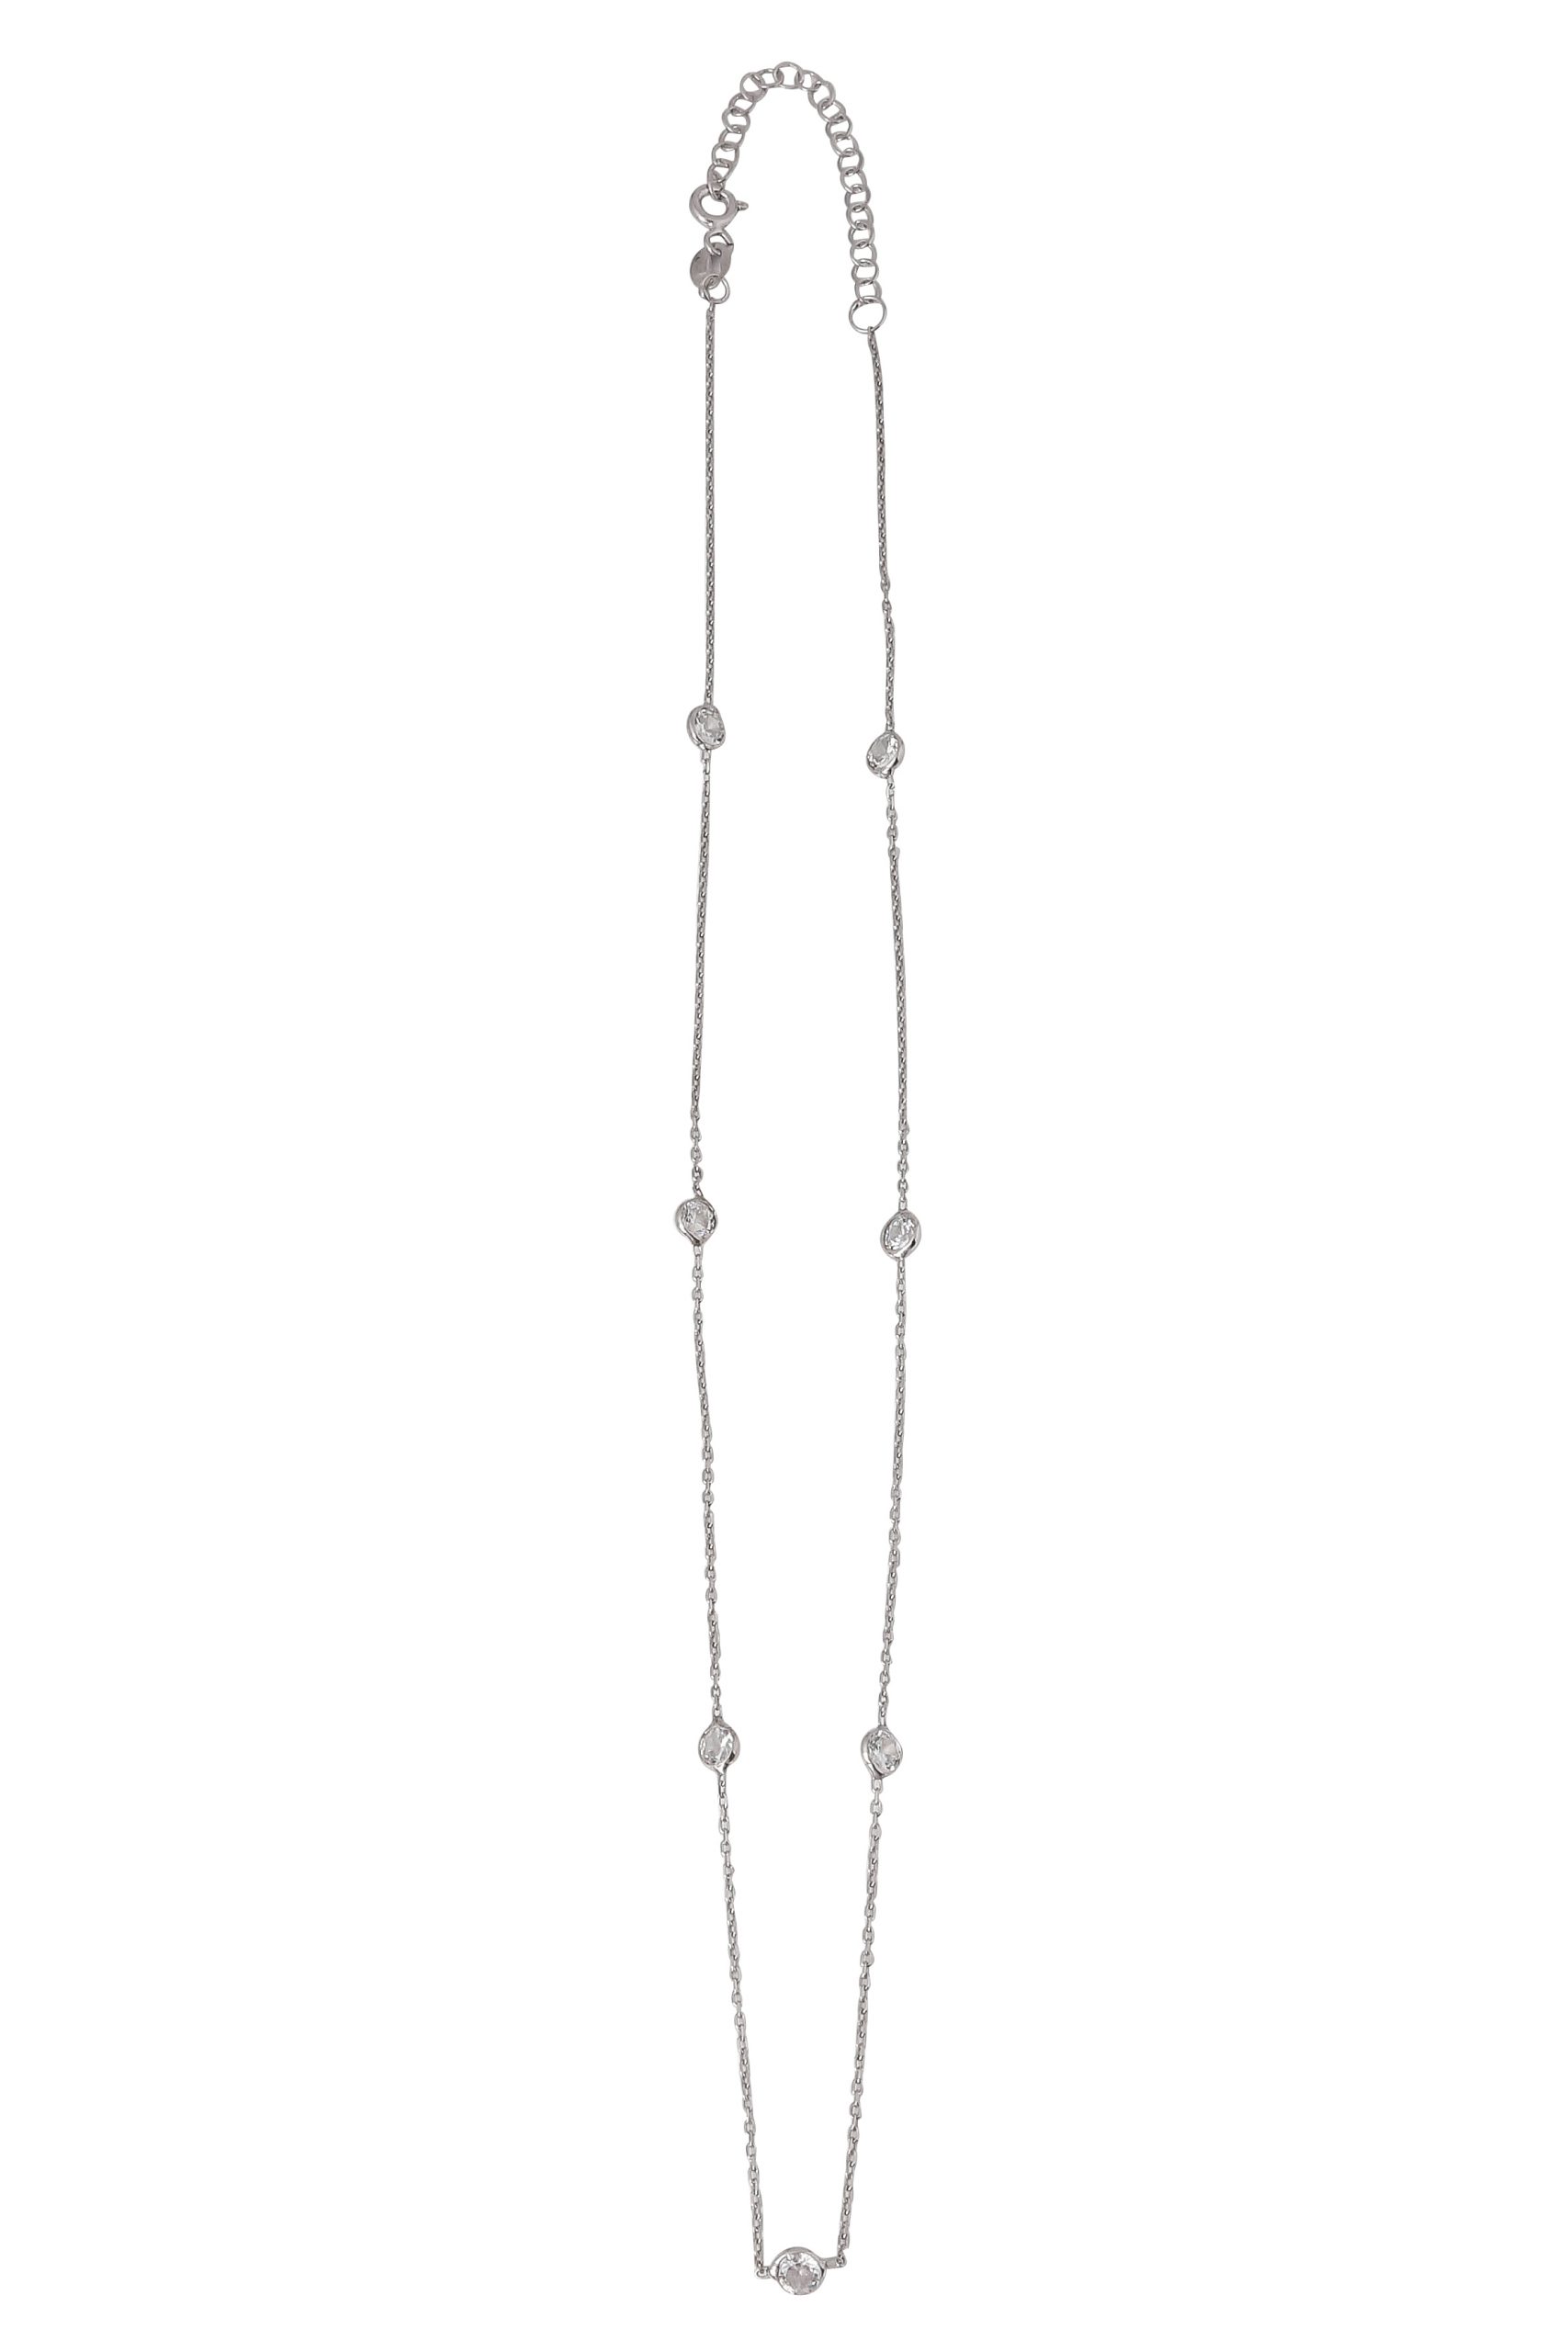 Diamonte chain necklace short silver – Opa Designs